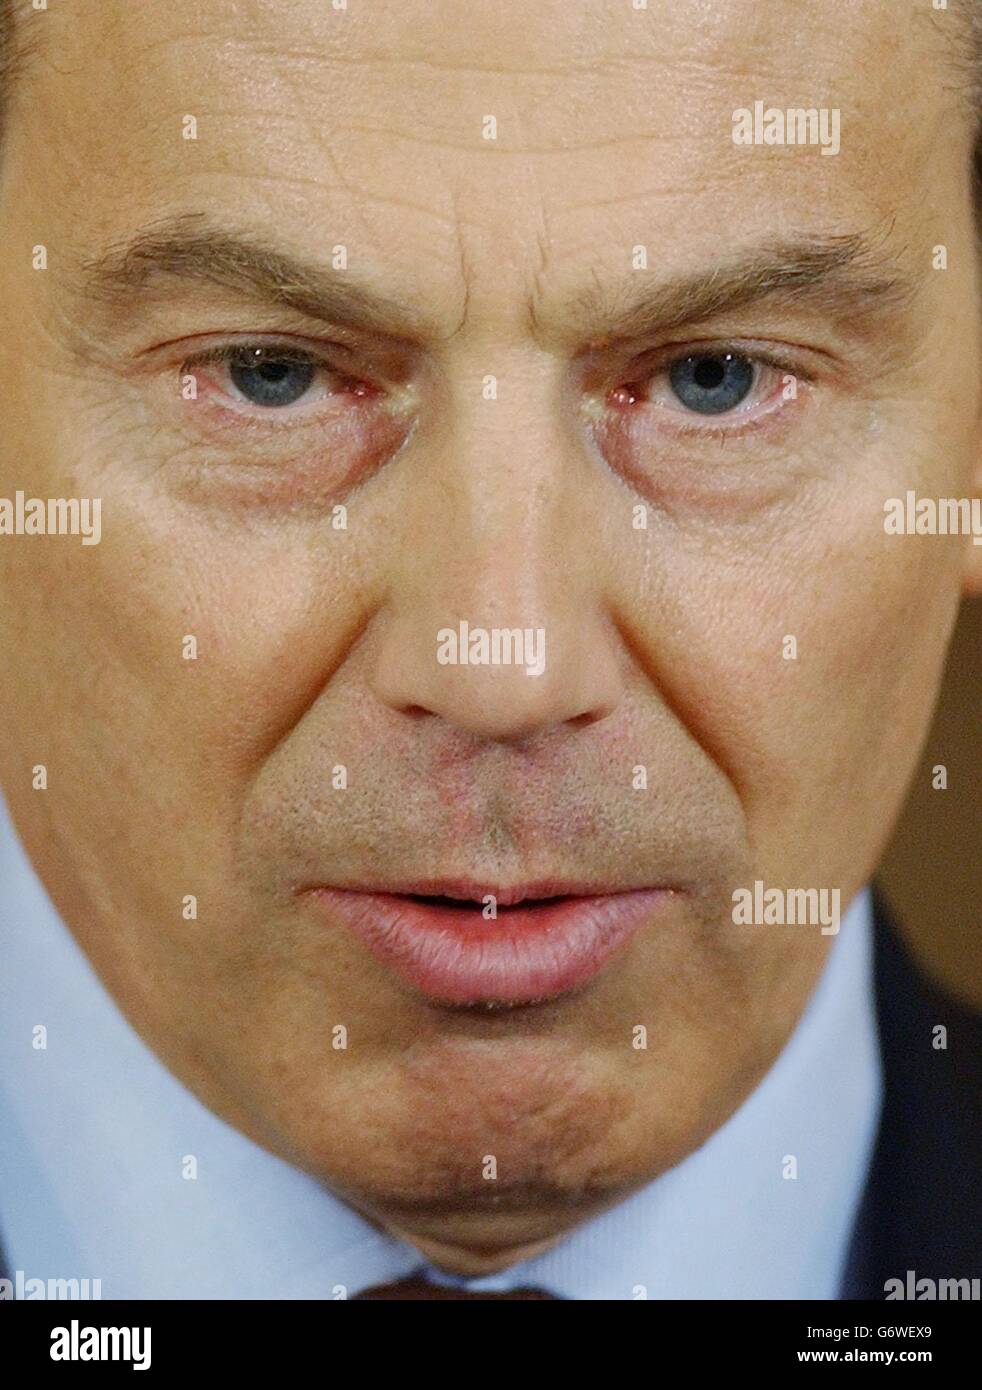 Tony Blair news conference Stock Photo